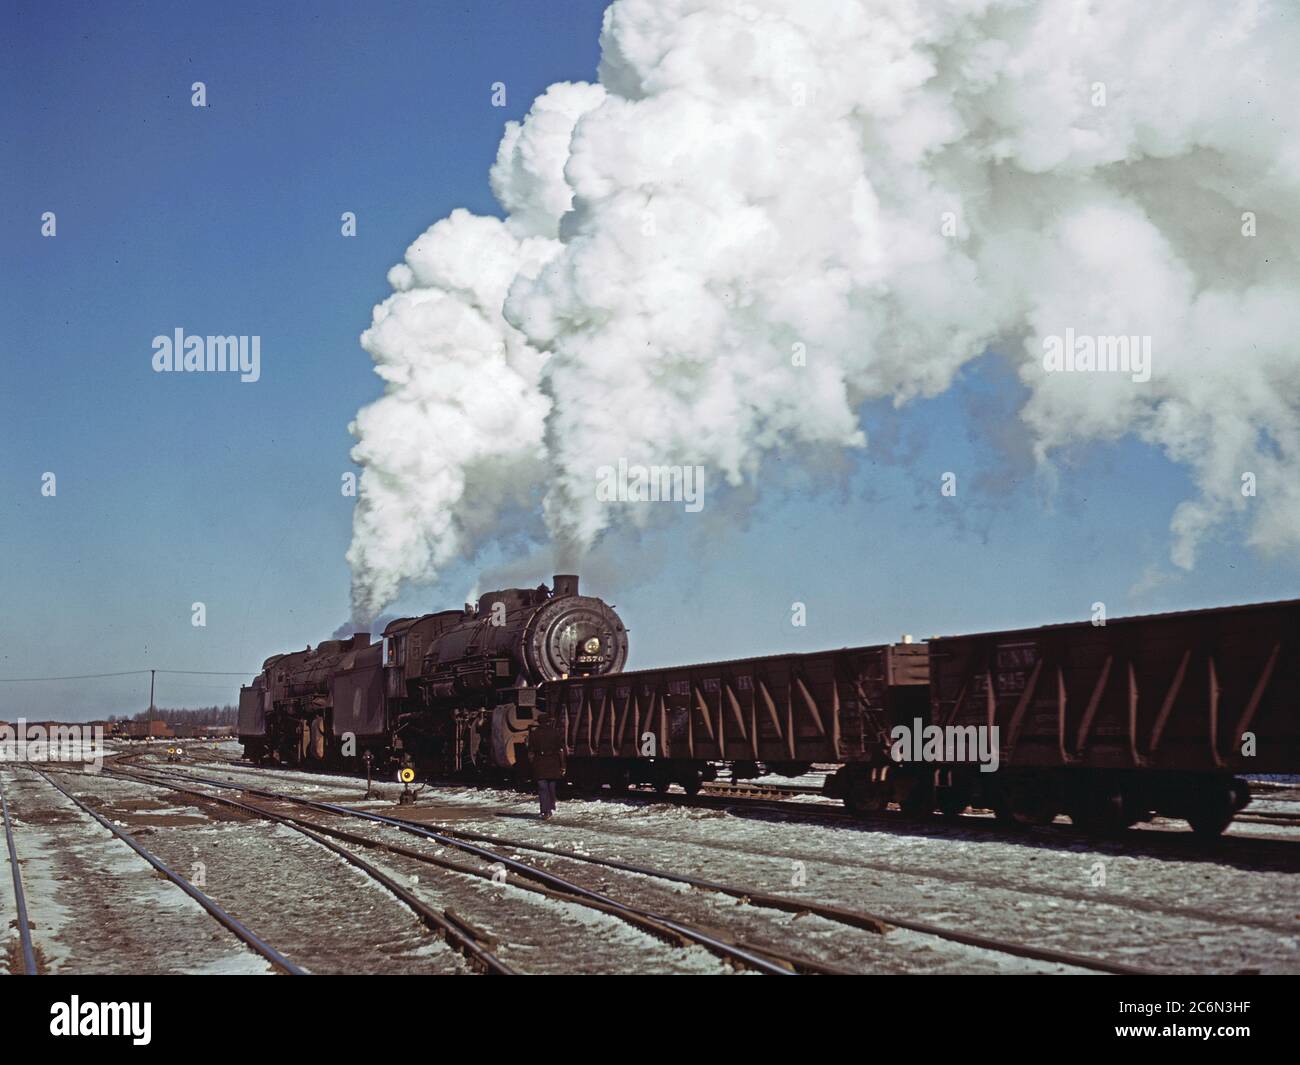 https://c8.alamy.com/comp/2C6N3HF/locomotive-in-a-railroad-yard-chicago-and-northwestern-ie-north-western-rr-near-chicago-ill-december-1942-ca-2C6N3HF.jpg